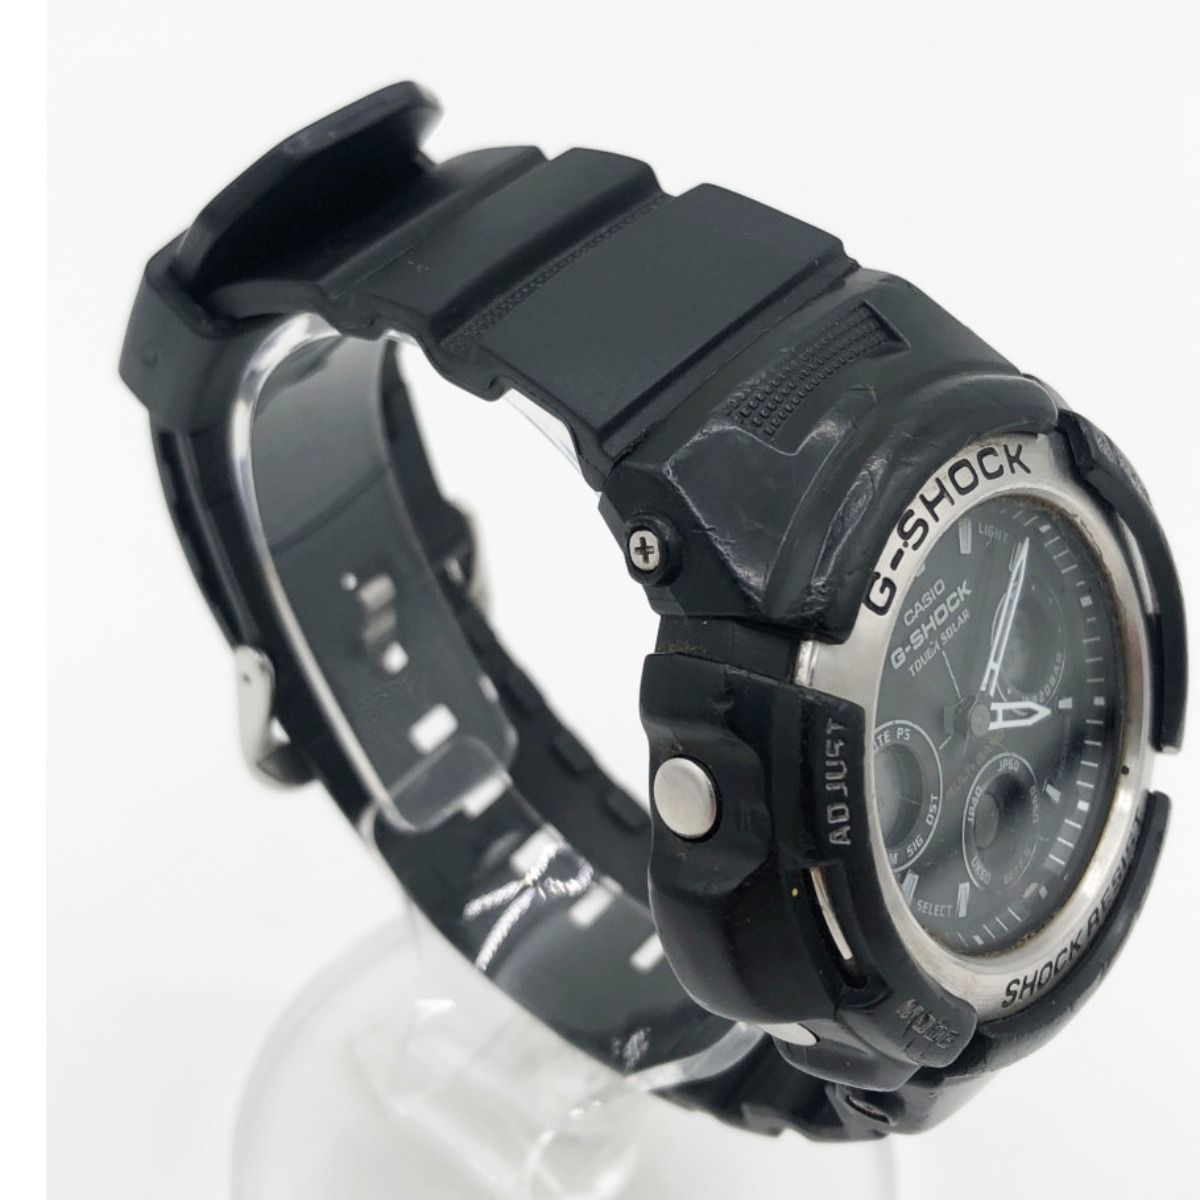 〇〇CASIO カシオ 腕時計 G-SHOCK AWG-100 ブラック なんでもリサイクルビッグバンSHOP メルカリ